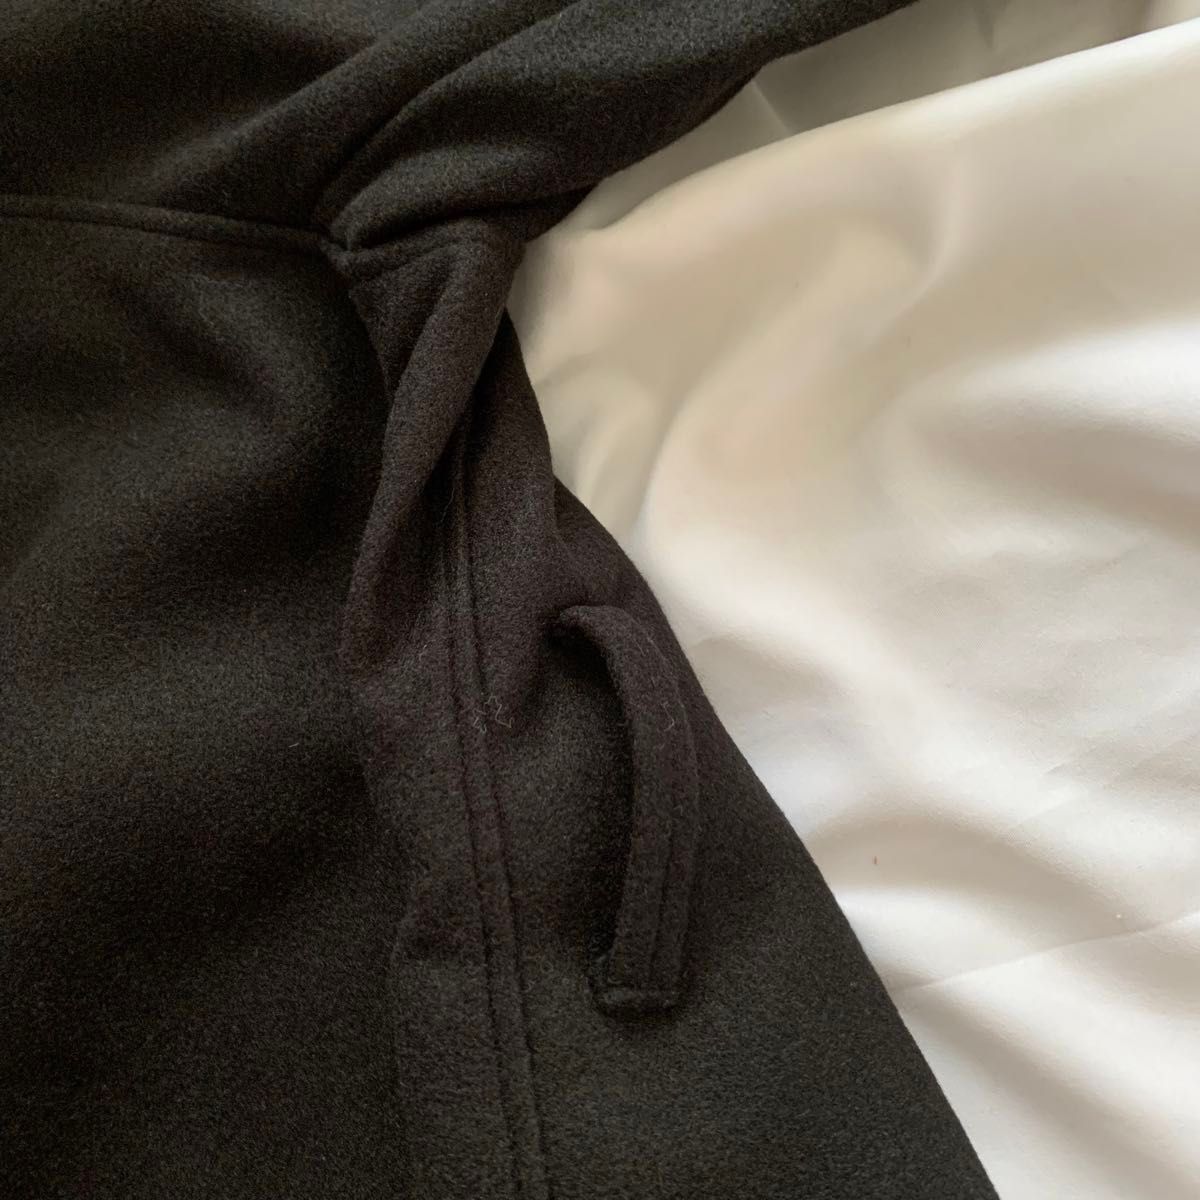 ロングコート コート ブラック 黒 通勤 通学 OL 上品 無地 体型カバー シンプル Lサイズ 大人 可愛い 韓国 ベルト付き